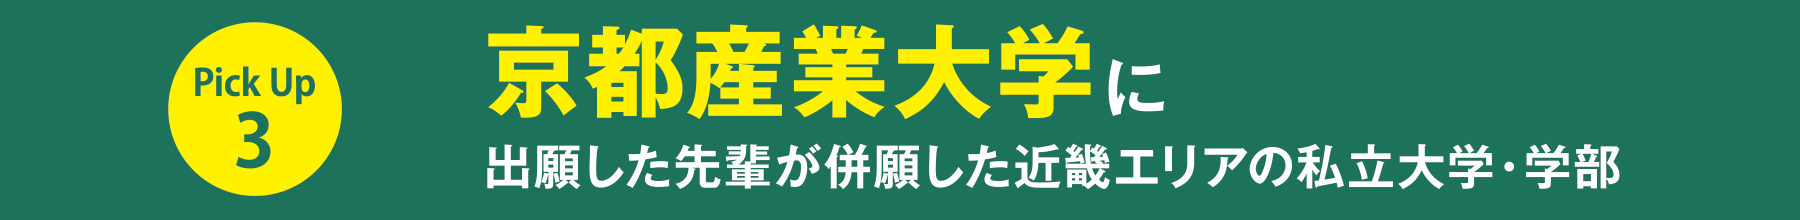 PickUP 3：京都産業大学に出願した先輩が併願した近畿エリアの私立大学・学部